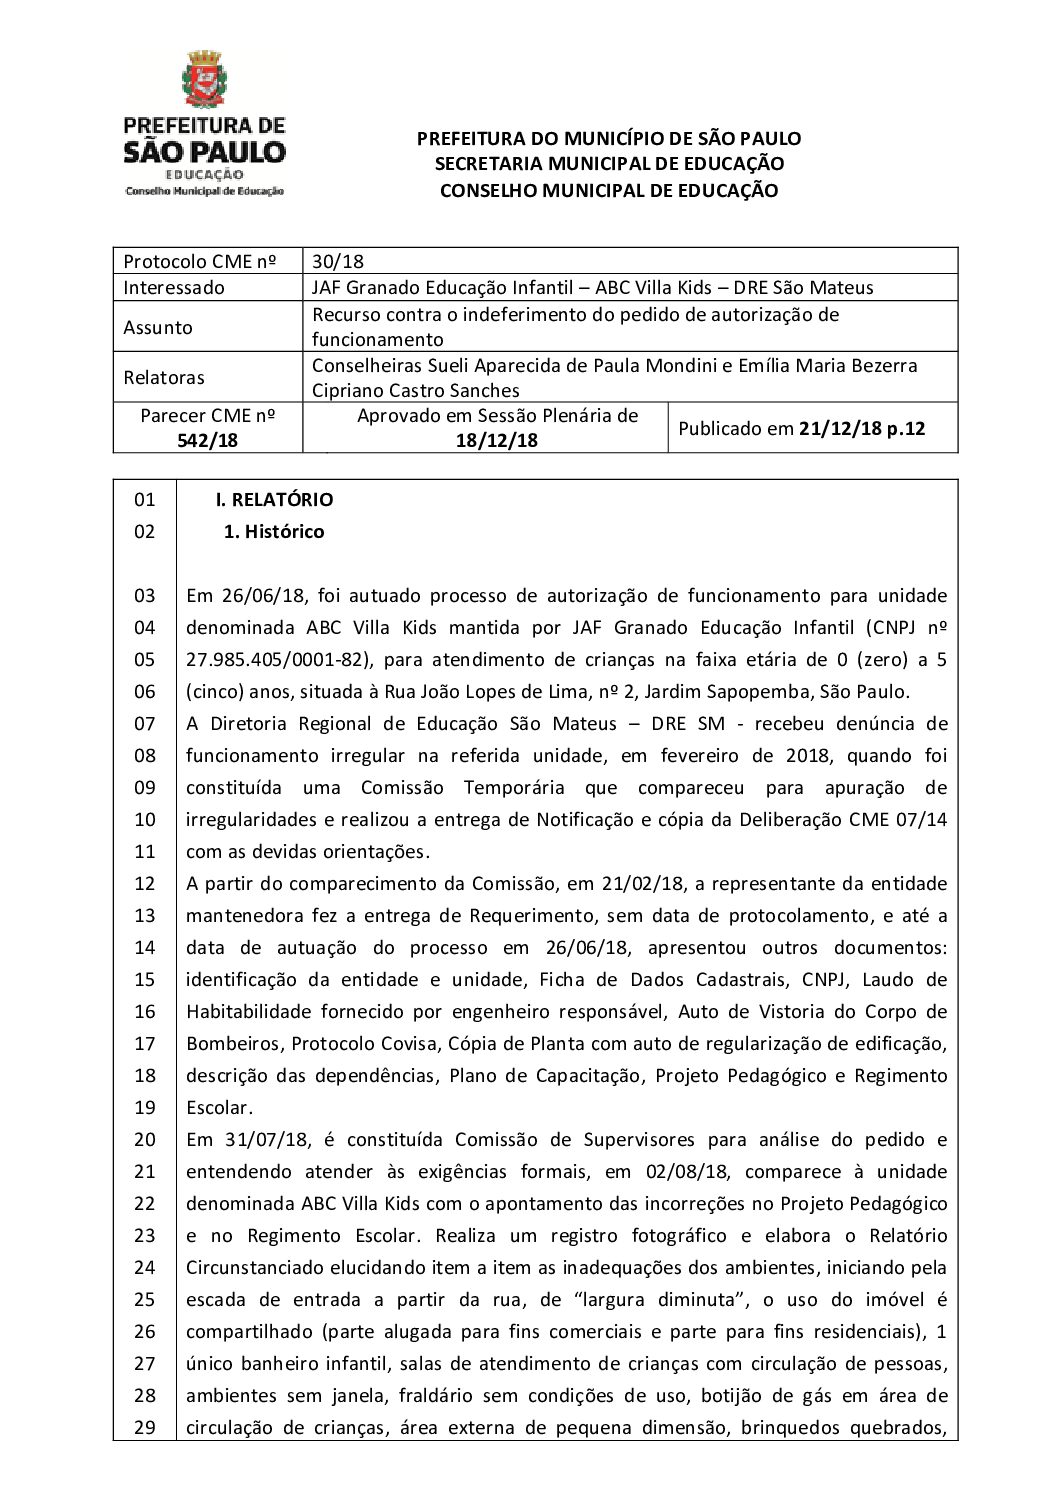 Parecer CME nº 542/2018 - JAF Granado Educação Infantil, ABC Villa Kids (DRE São Mateus) - Recurso contra o indeferimento do pedido de autorização de funcionamento 